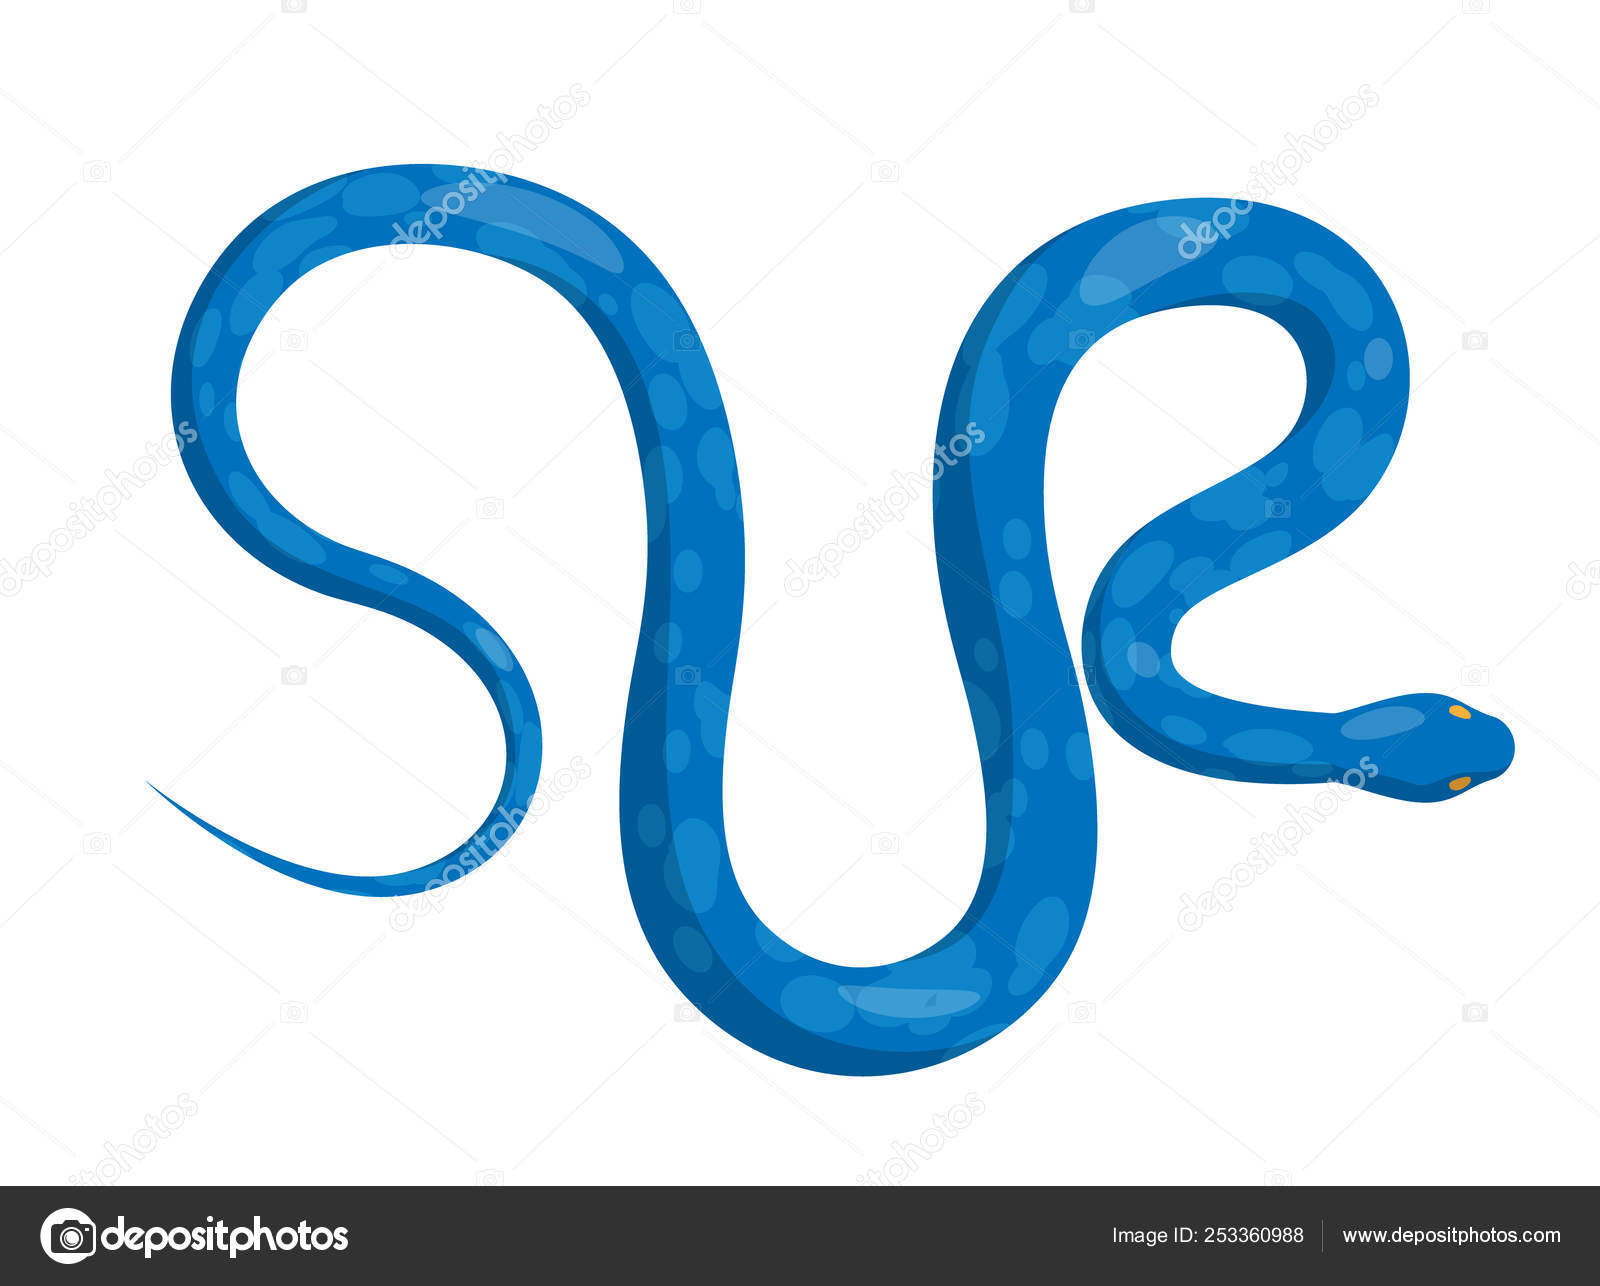 Jogo Snake em Python! Aprenda do Zero Hoje!%